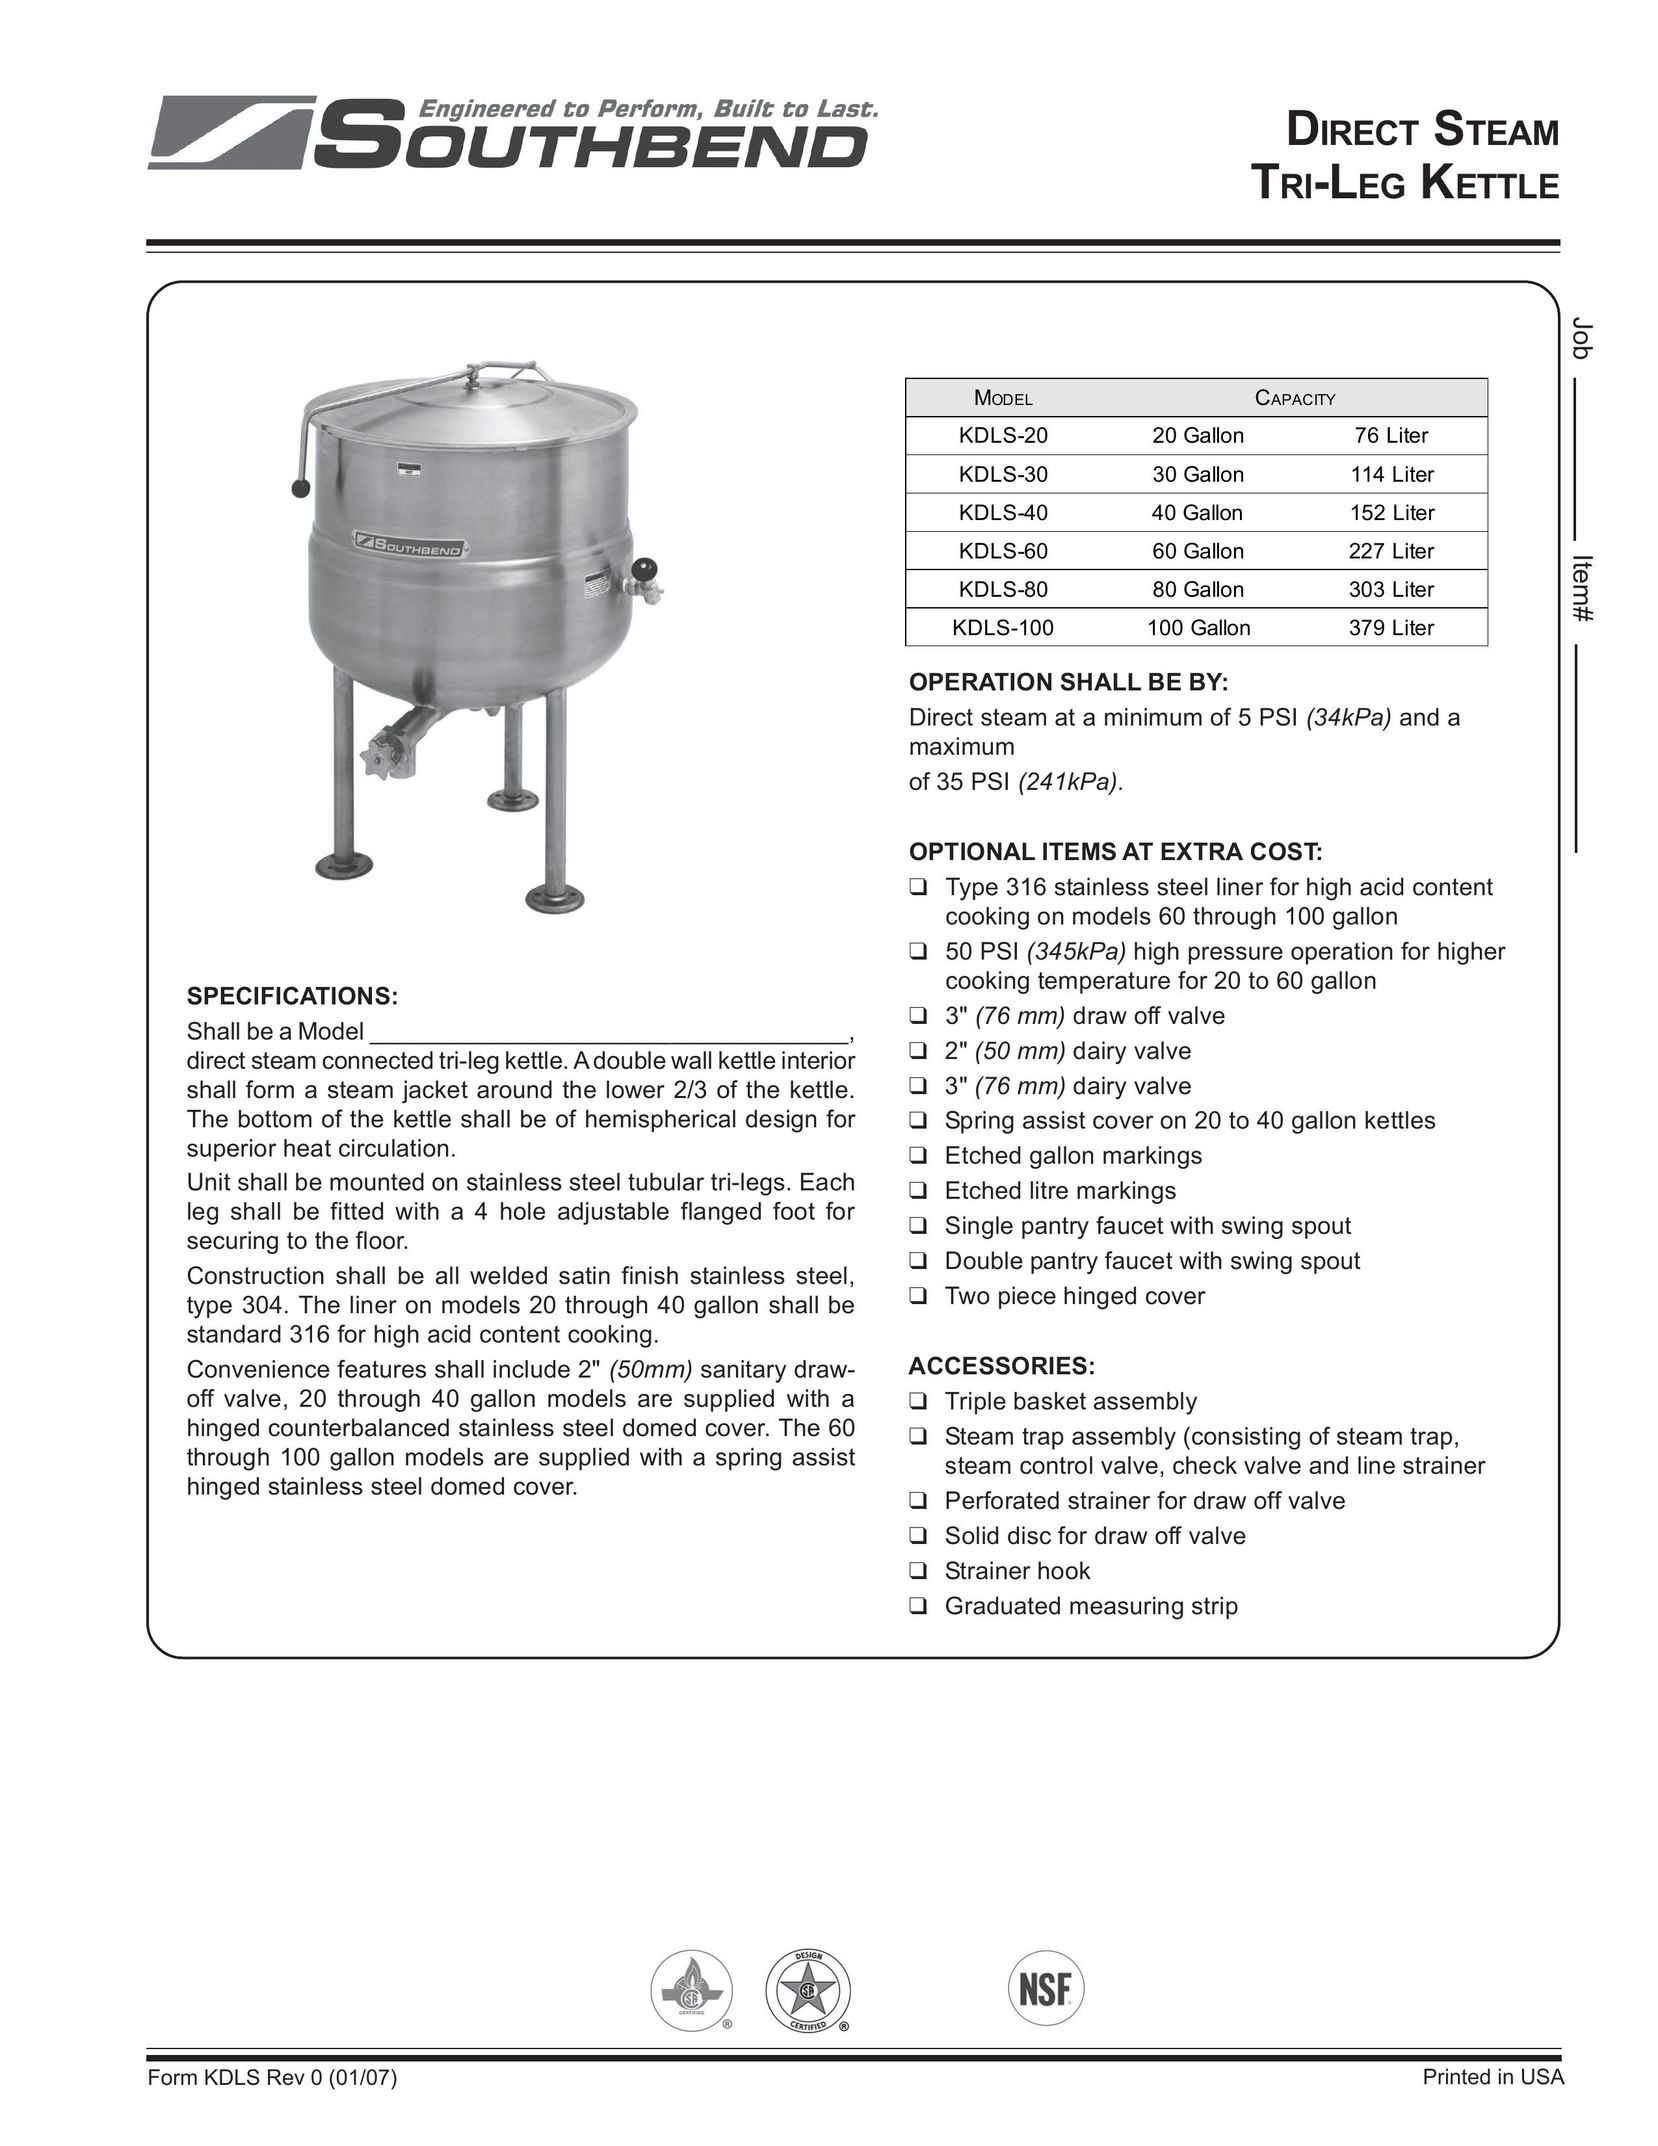 Southbend KDLS-40 Hot Beverage Maker User Manual